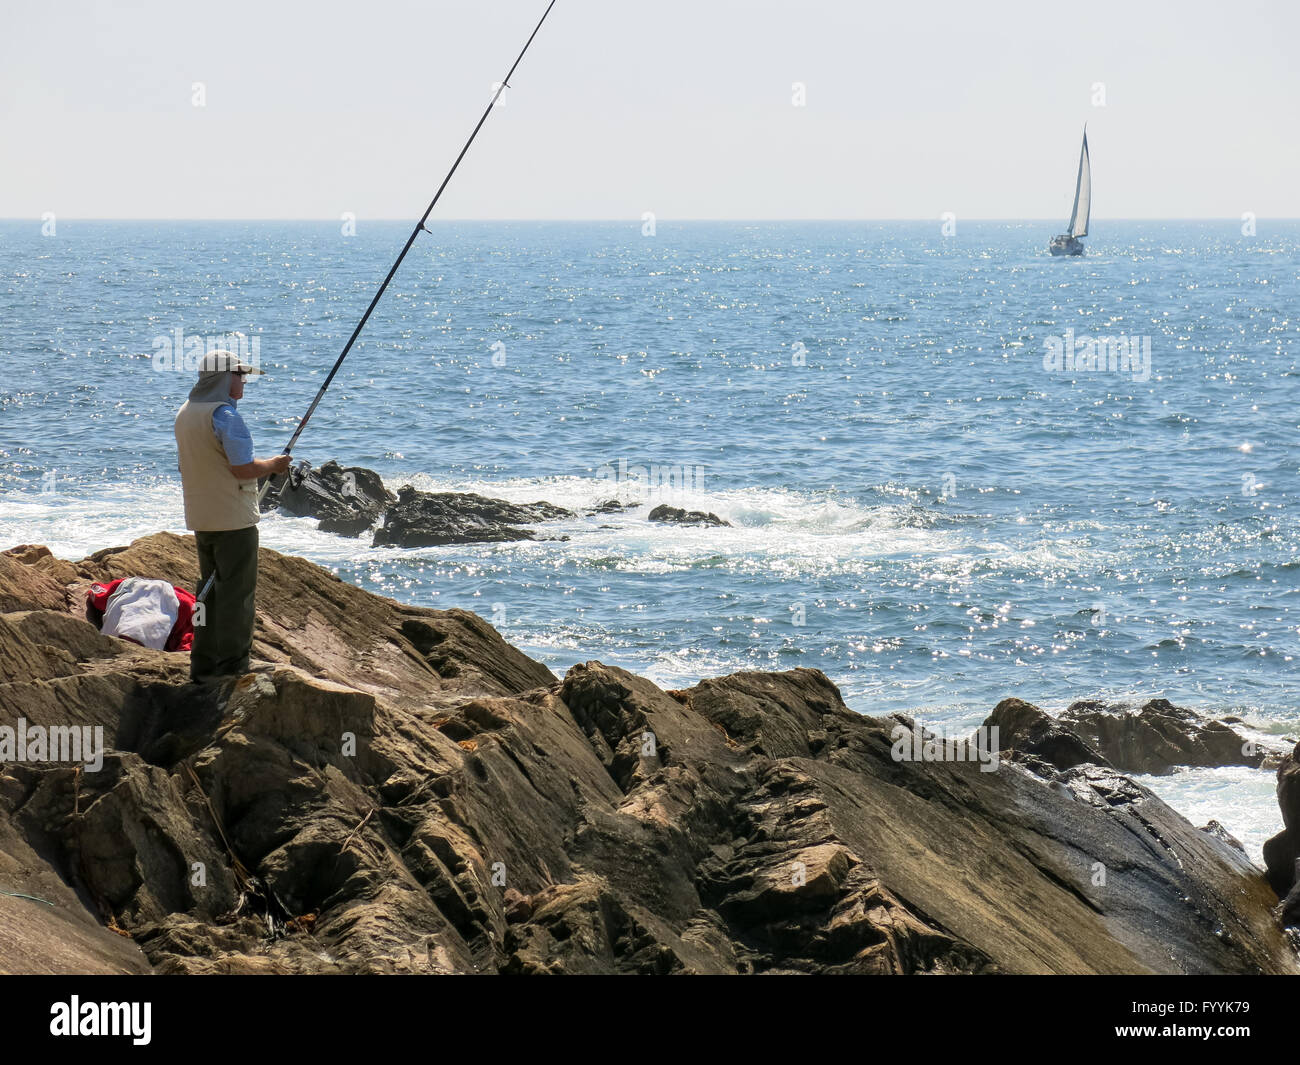 Pêcheur la pêche dans l'océan Atlantique et voilier naviguant au large des côtes de Foz près de Porto, Portugal Banque D'Images